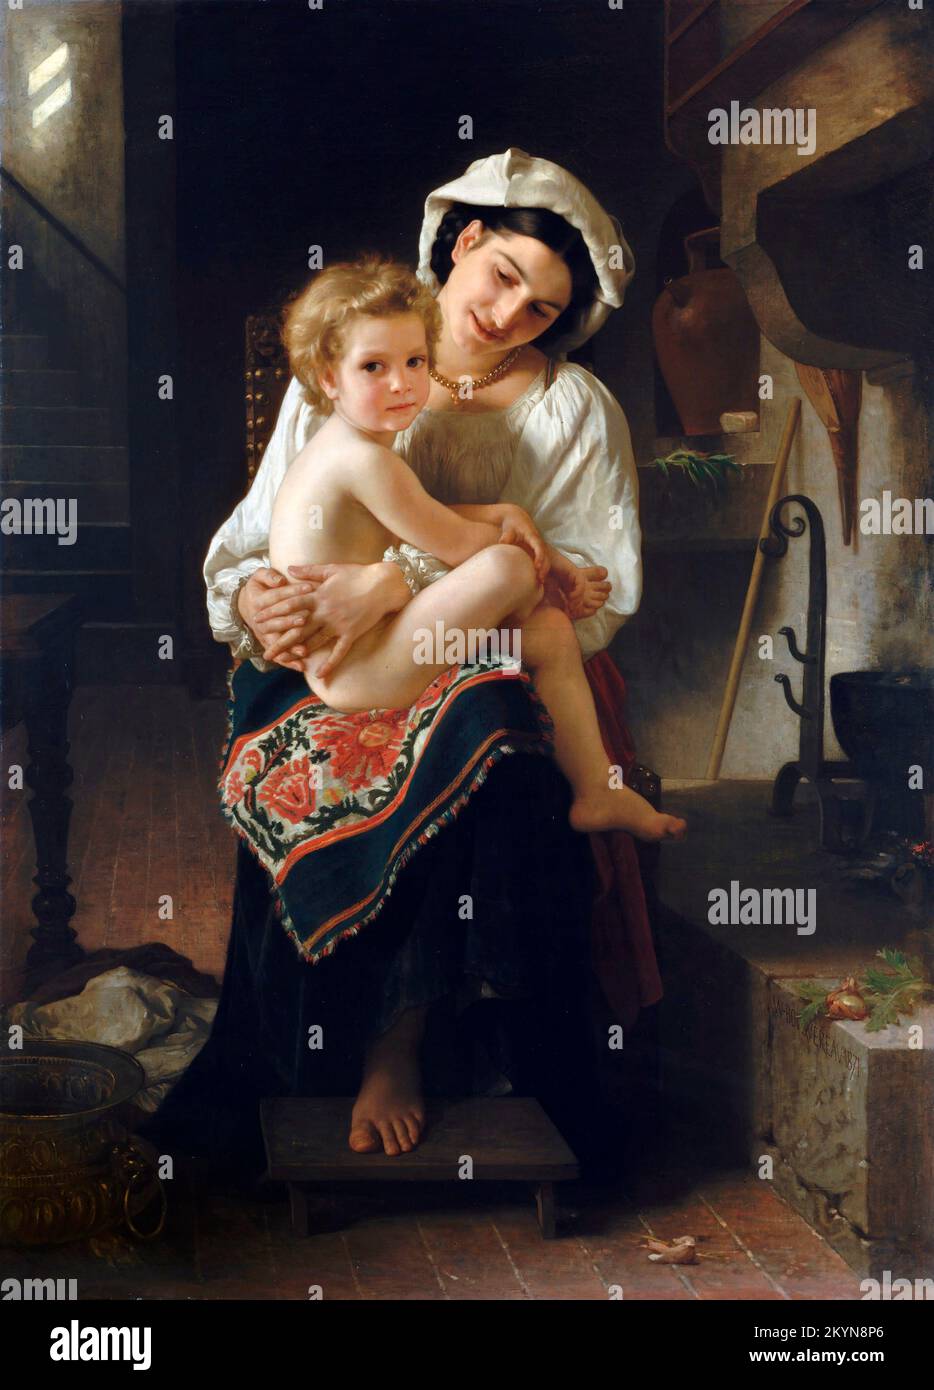 Jeune mère qui regarde son enfant par William-Adolphe Bouguereau (1825-1905), huile sur toile, 1871 Banque D'Images